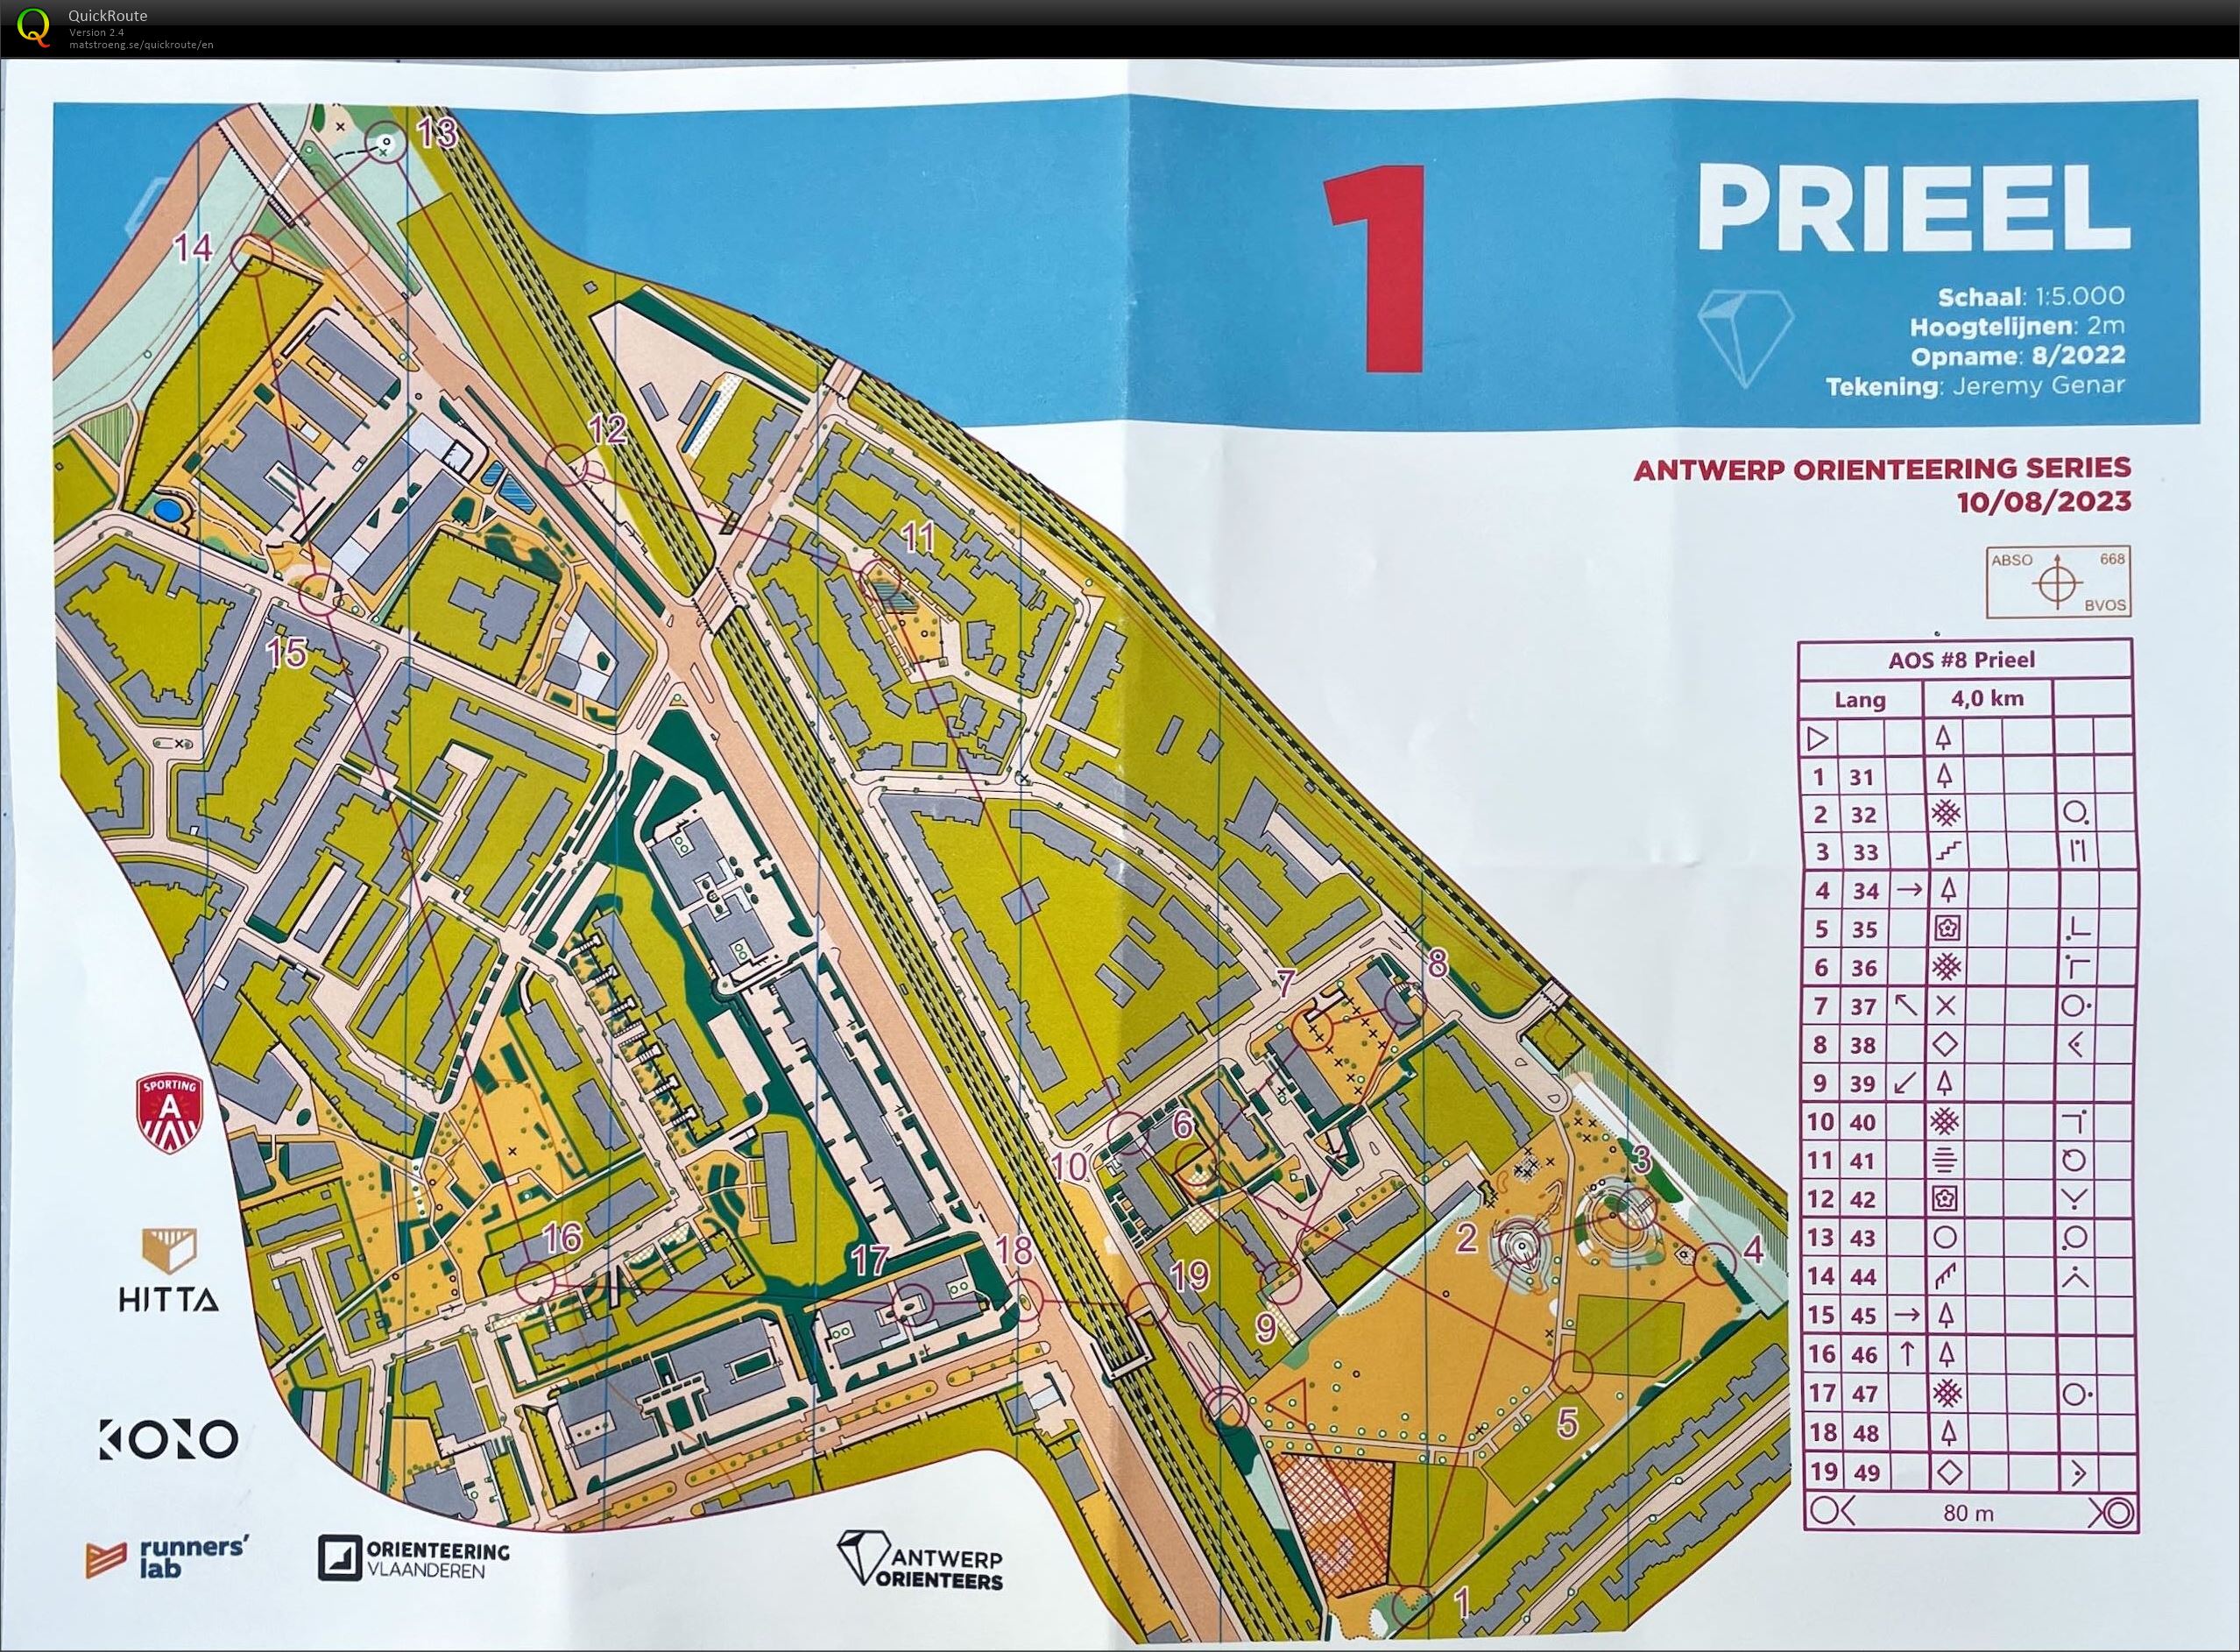 Antwerp Orienteering Series - Prieel - Lang (10.08.2023)